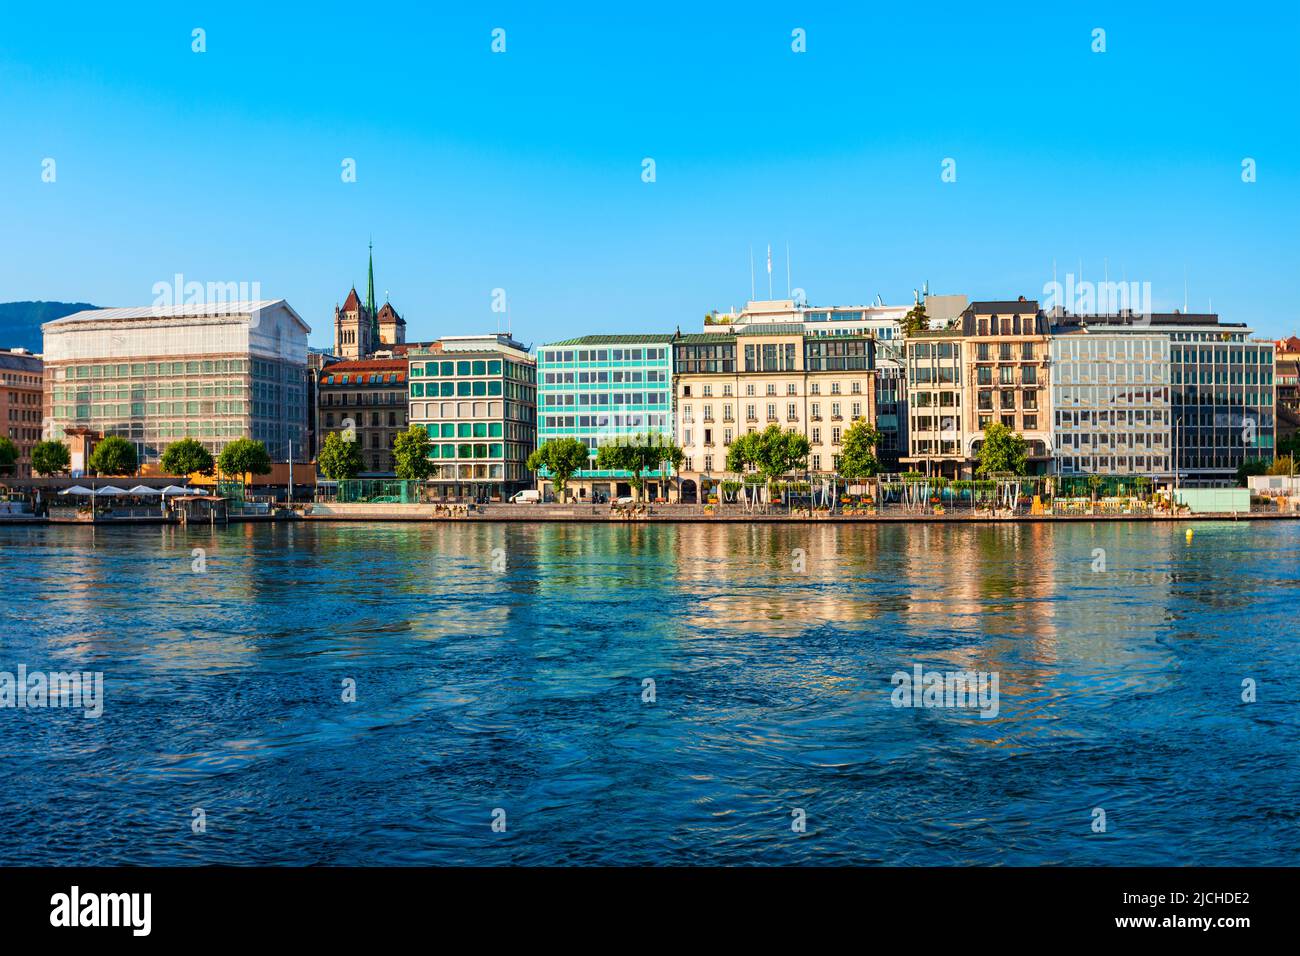 Vista panorámica de la ciudad de Ginebra. Ginebra o Geneve es la segunda ciudad más poblada de Suiza, situada a orillas del lago de Ginebra. Foto de stock